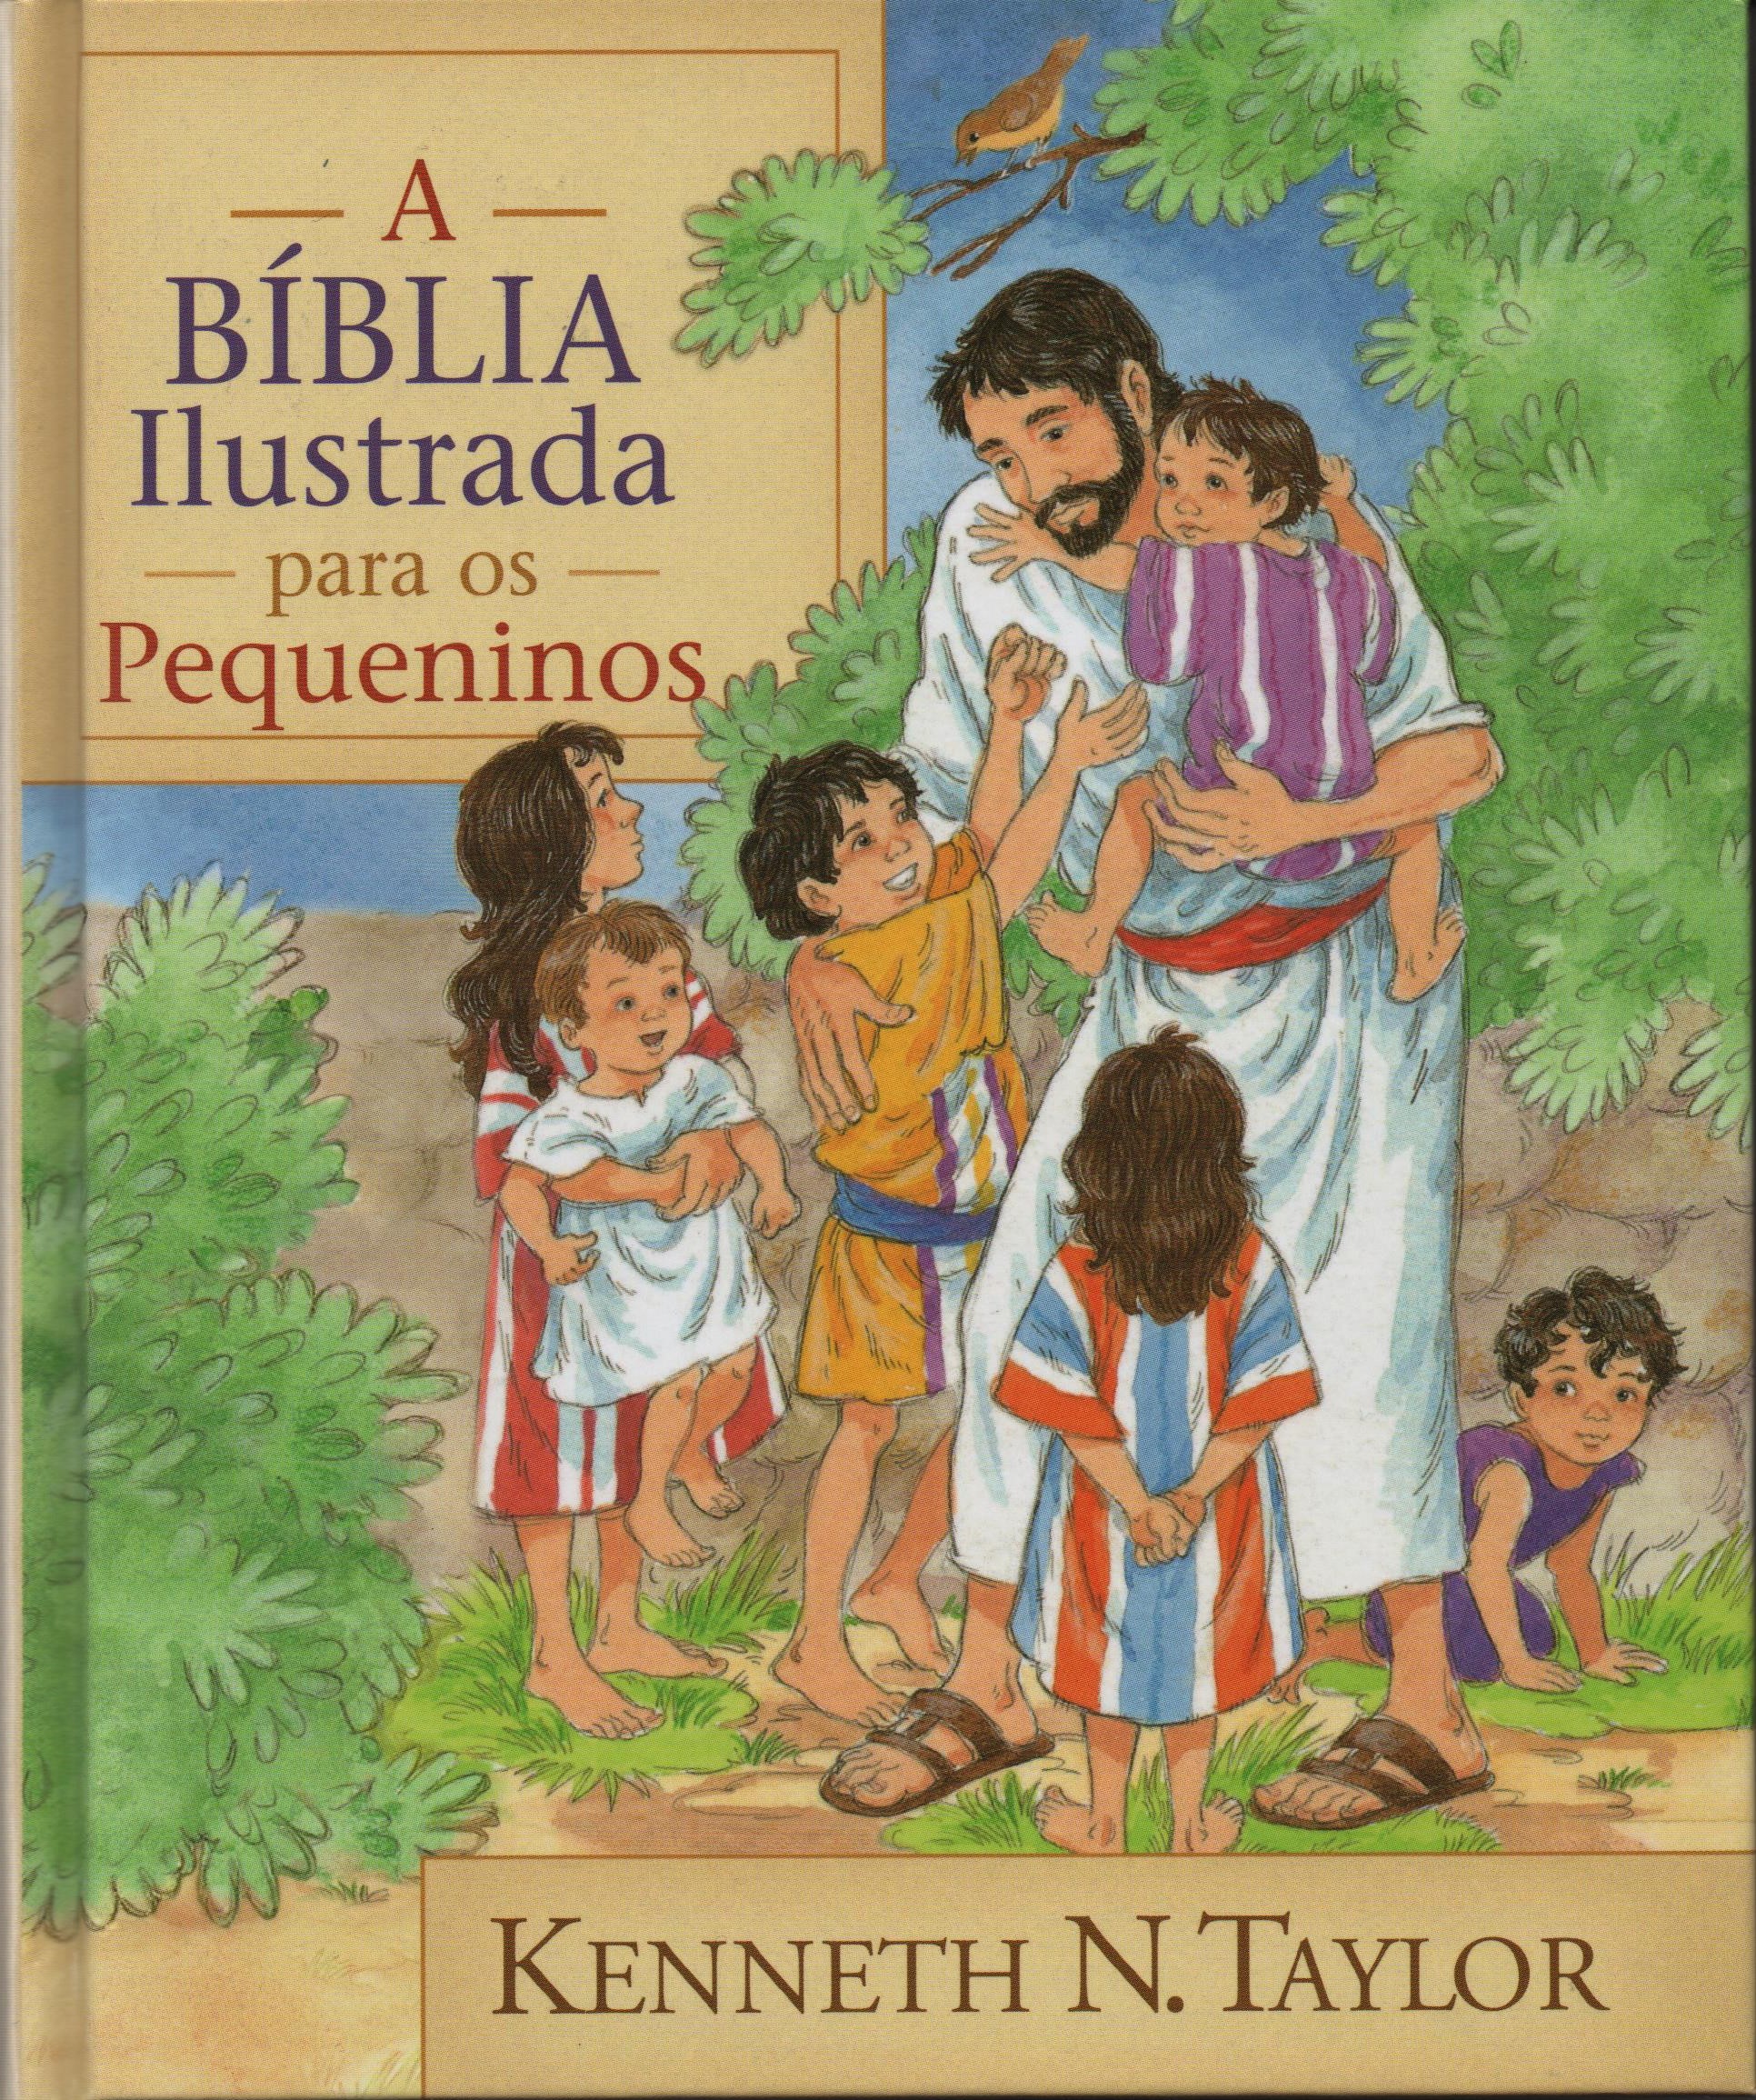 A Bíblia ilustrada para os pequeninos